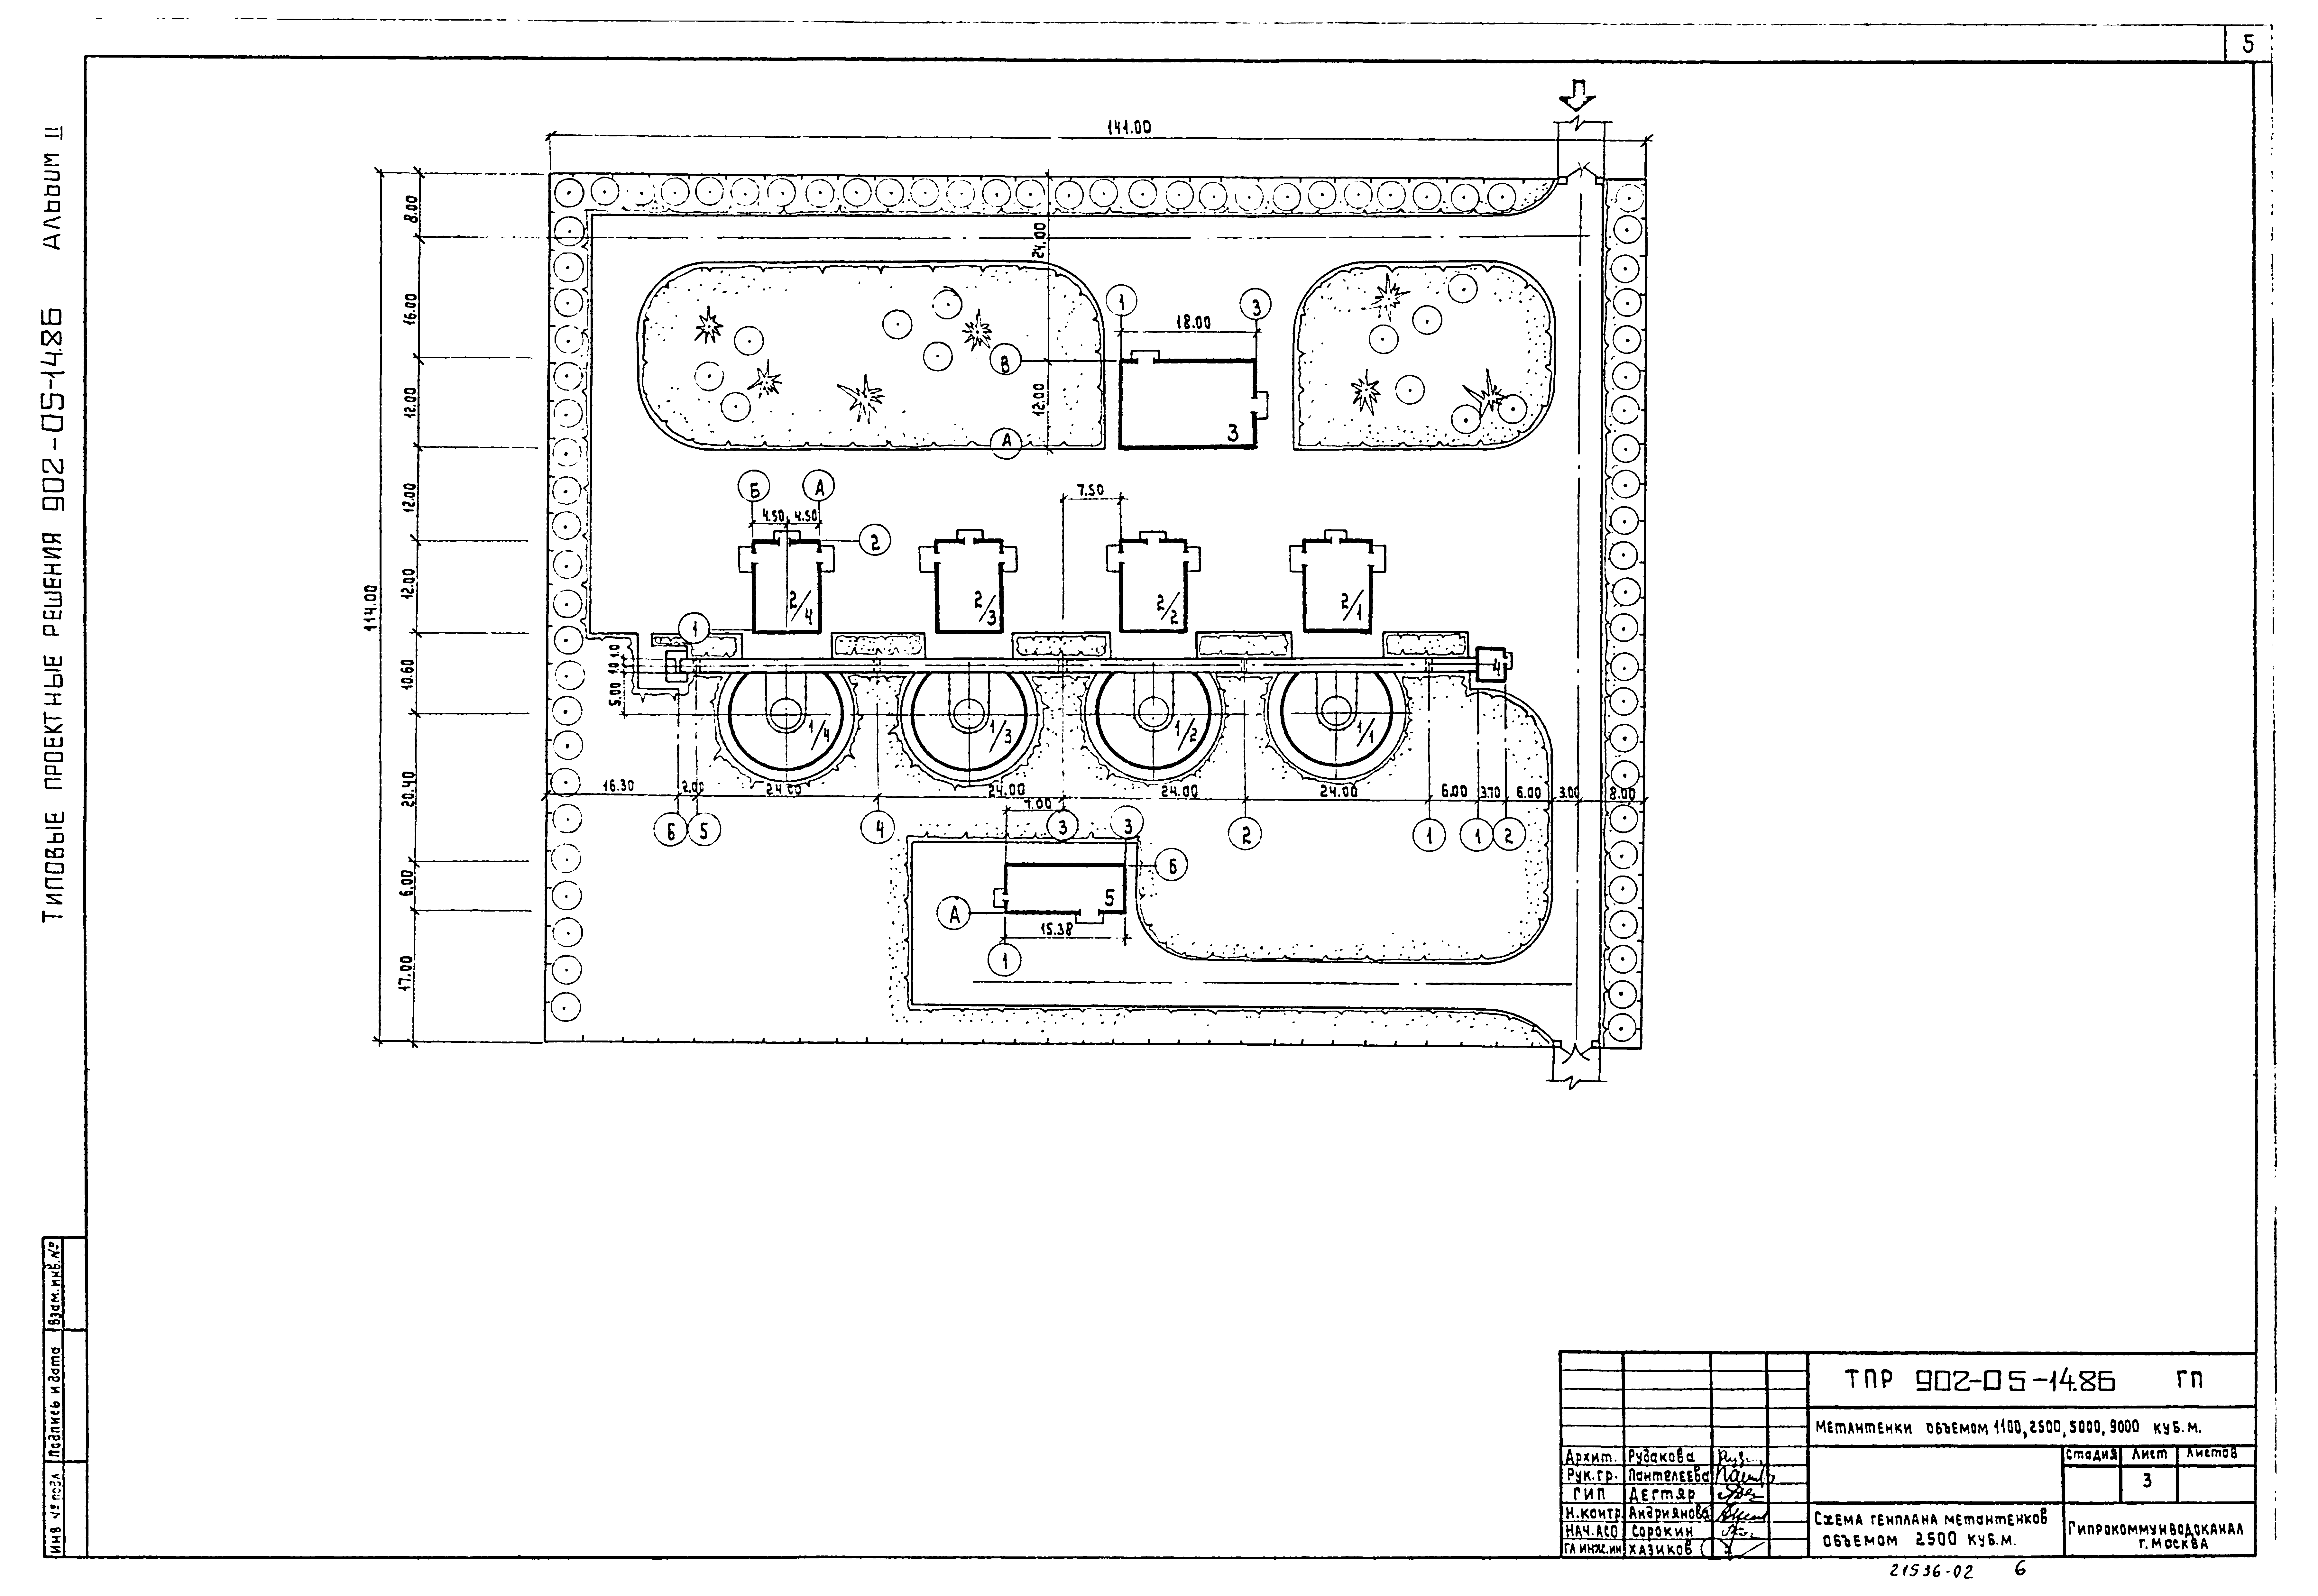 Типовые материалы для проектирования 902-05-14.86